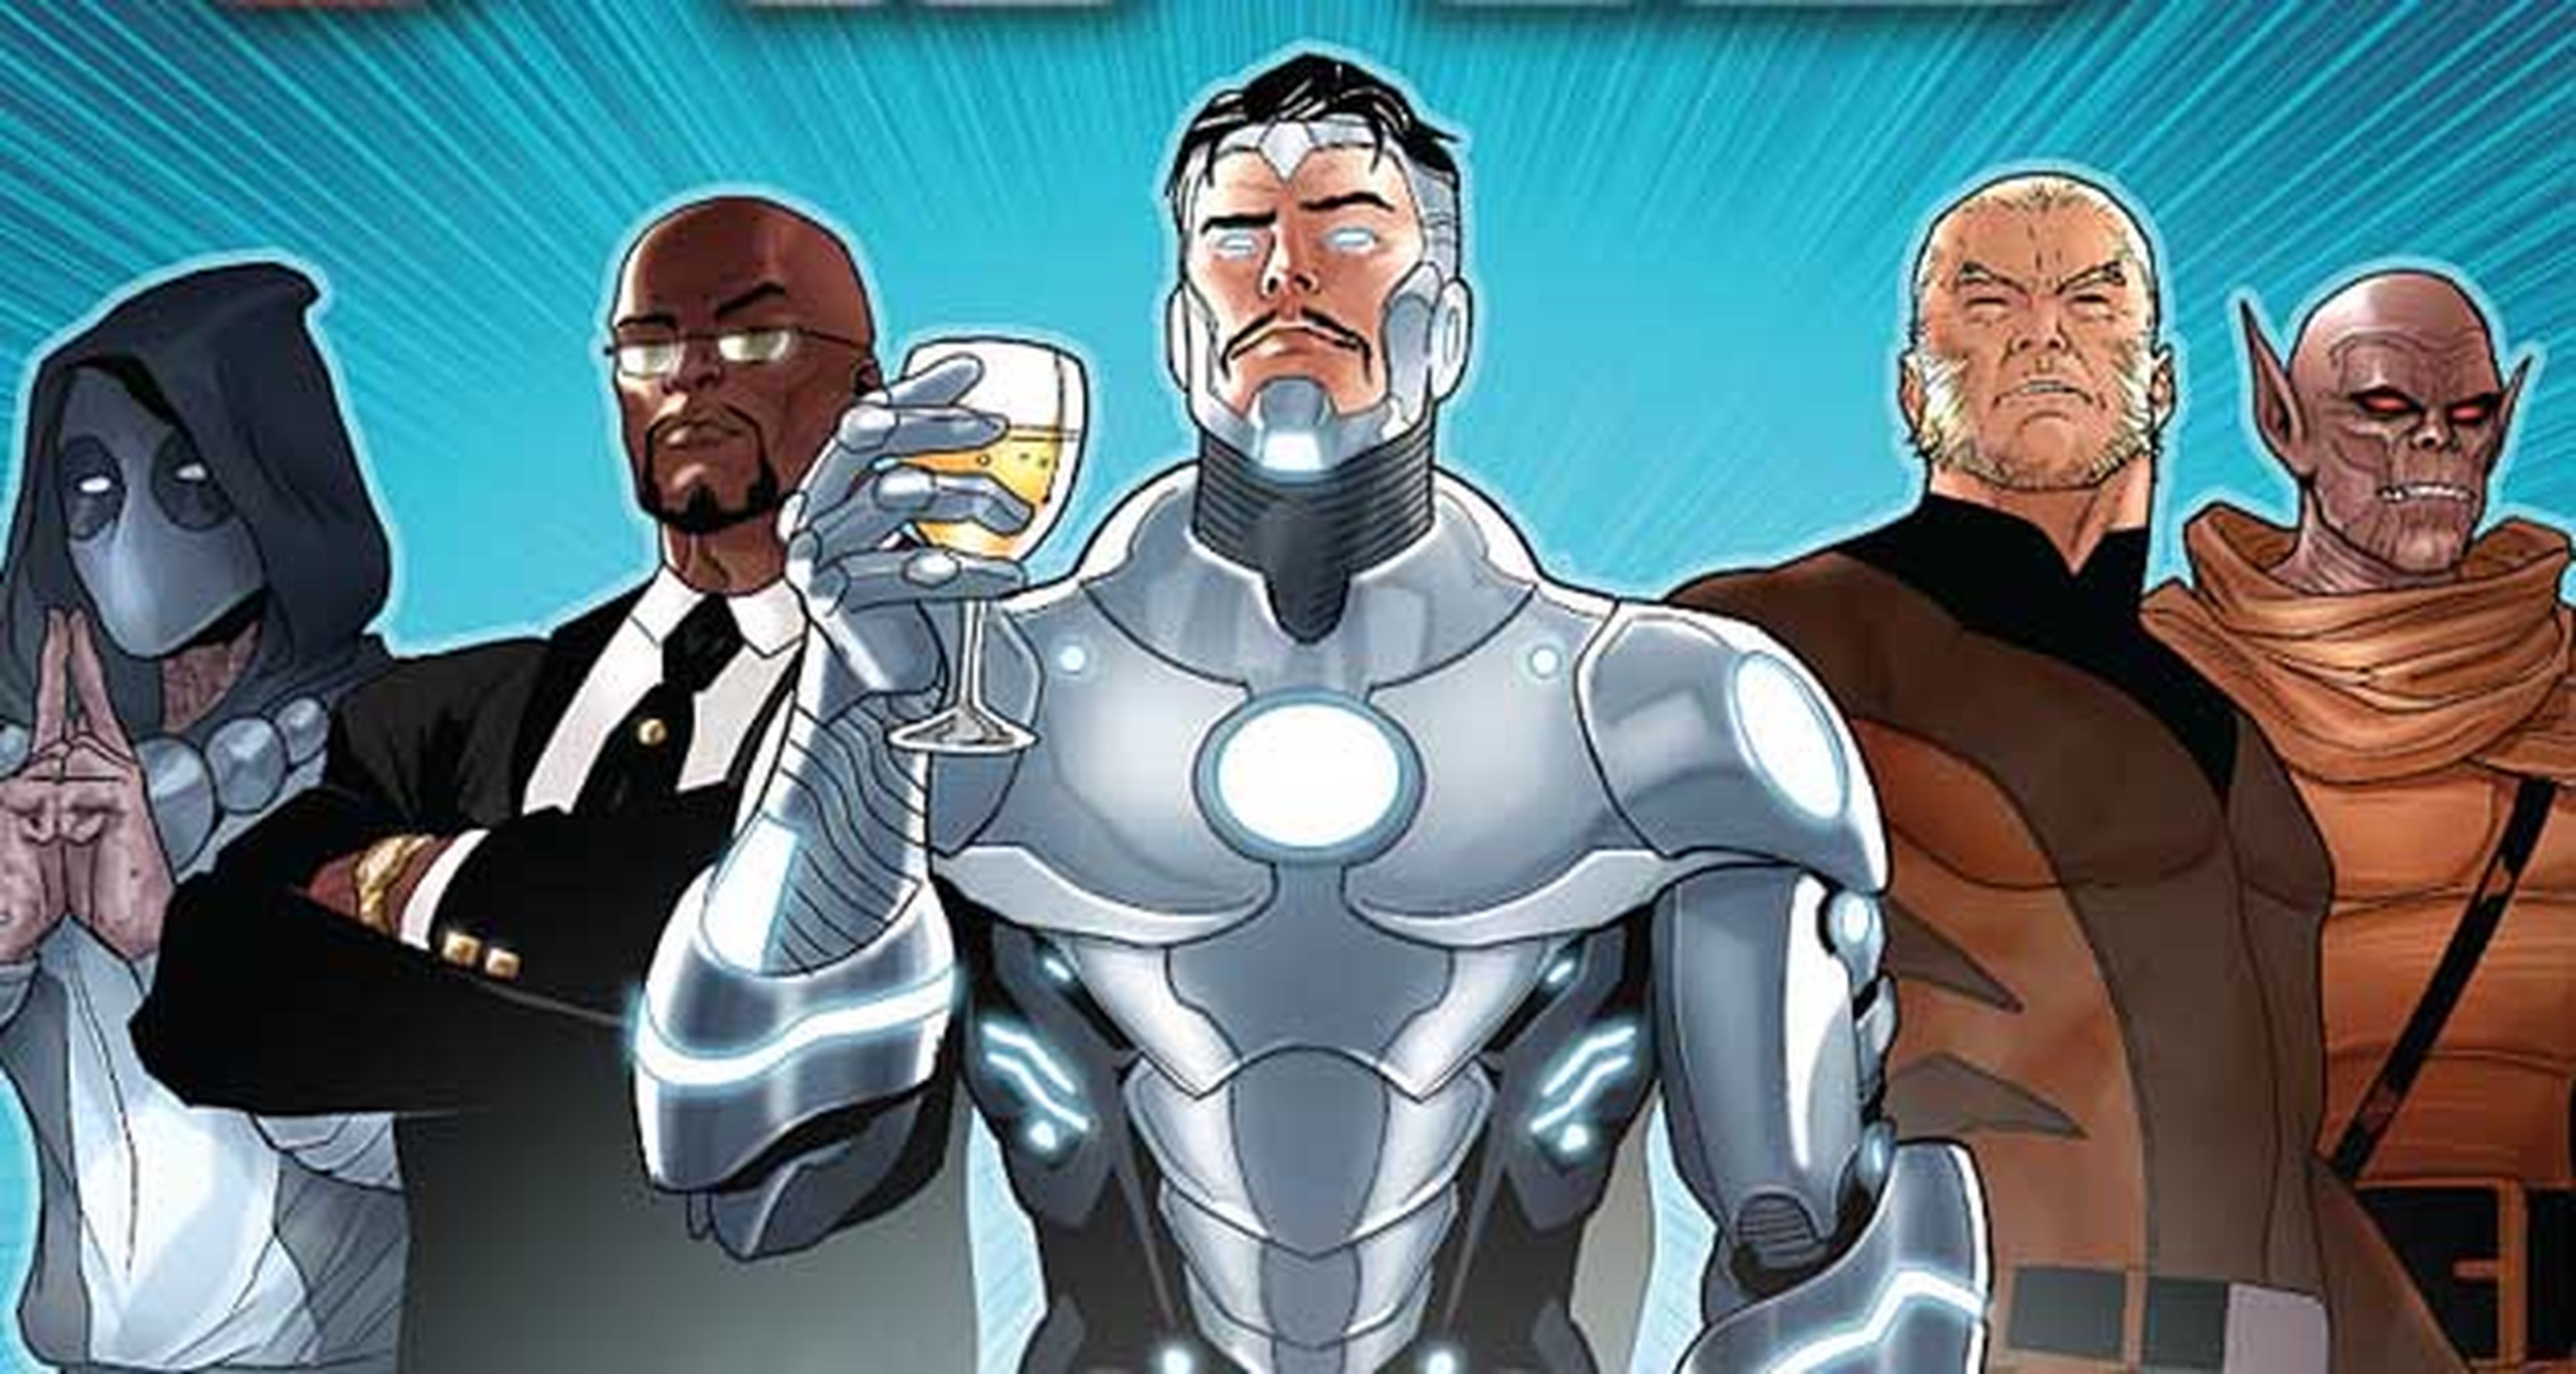 Avance del final de Axis, el gran crossover de Marvel en 2014